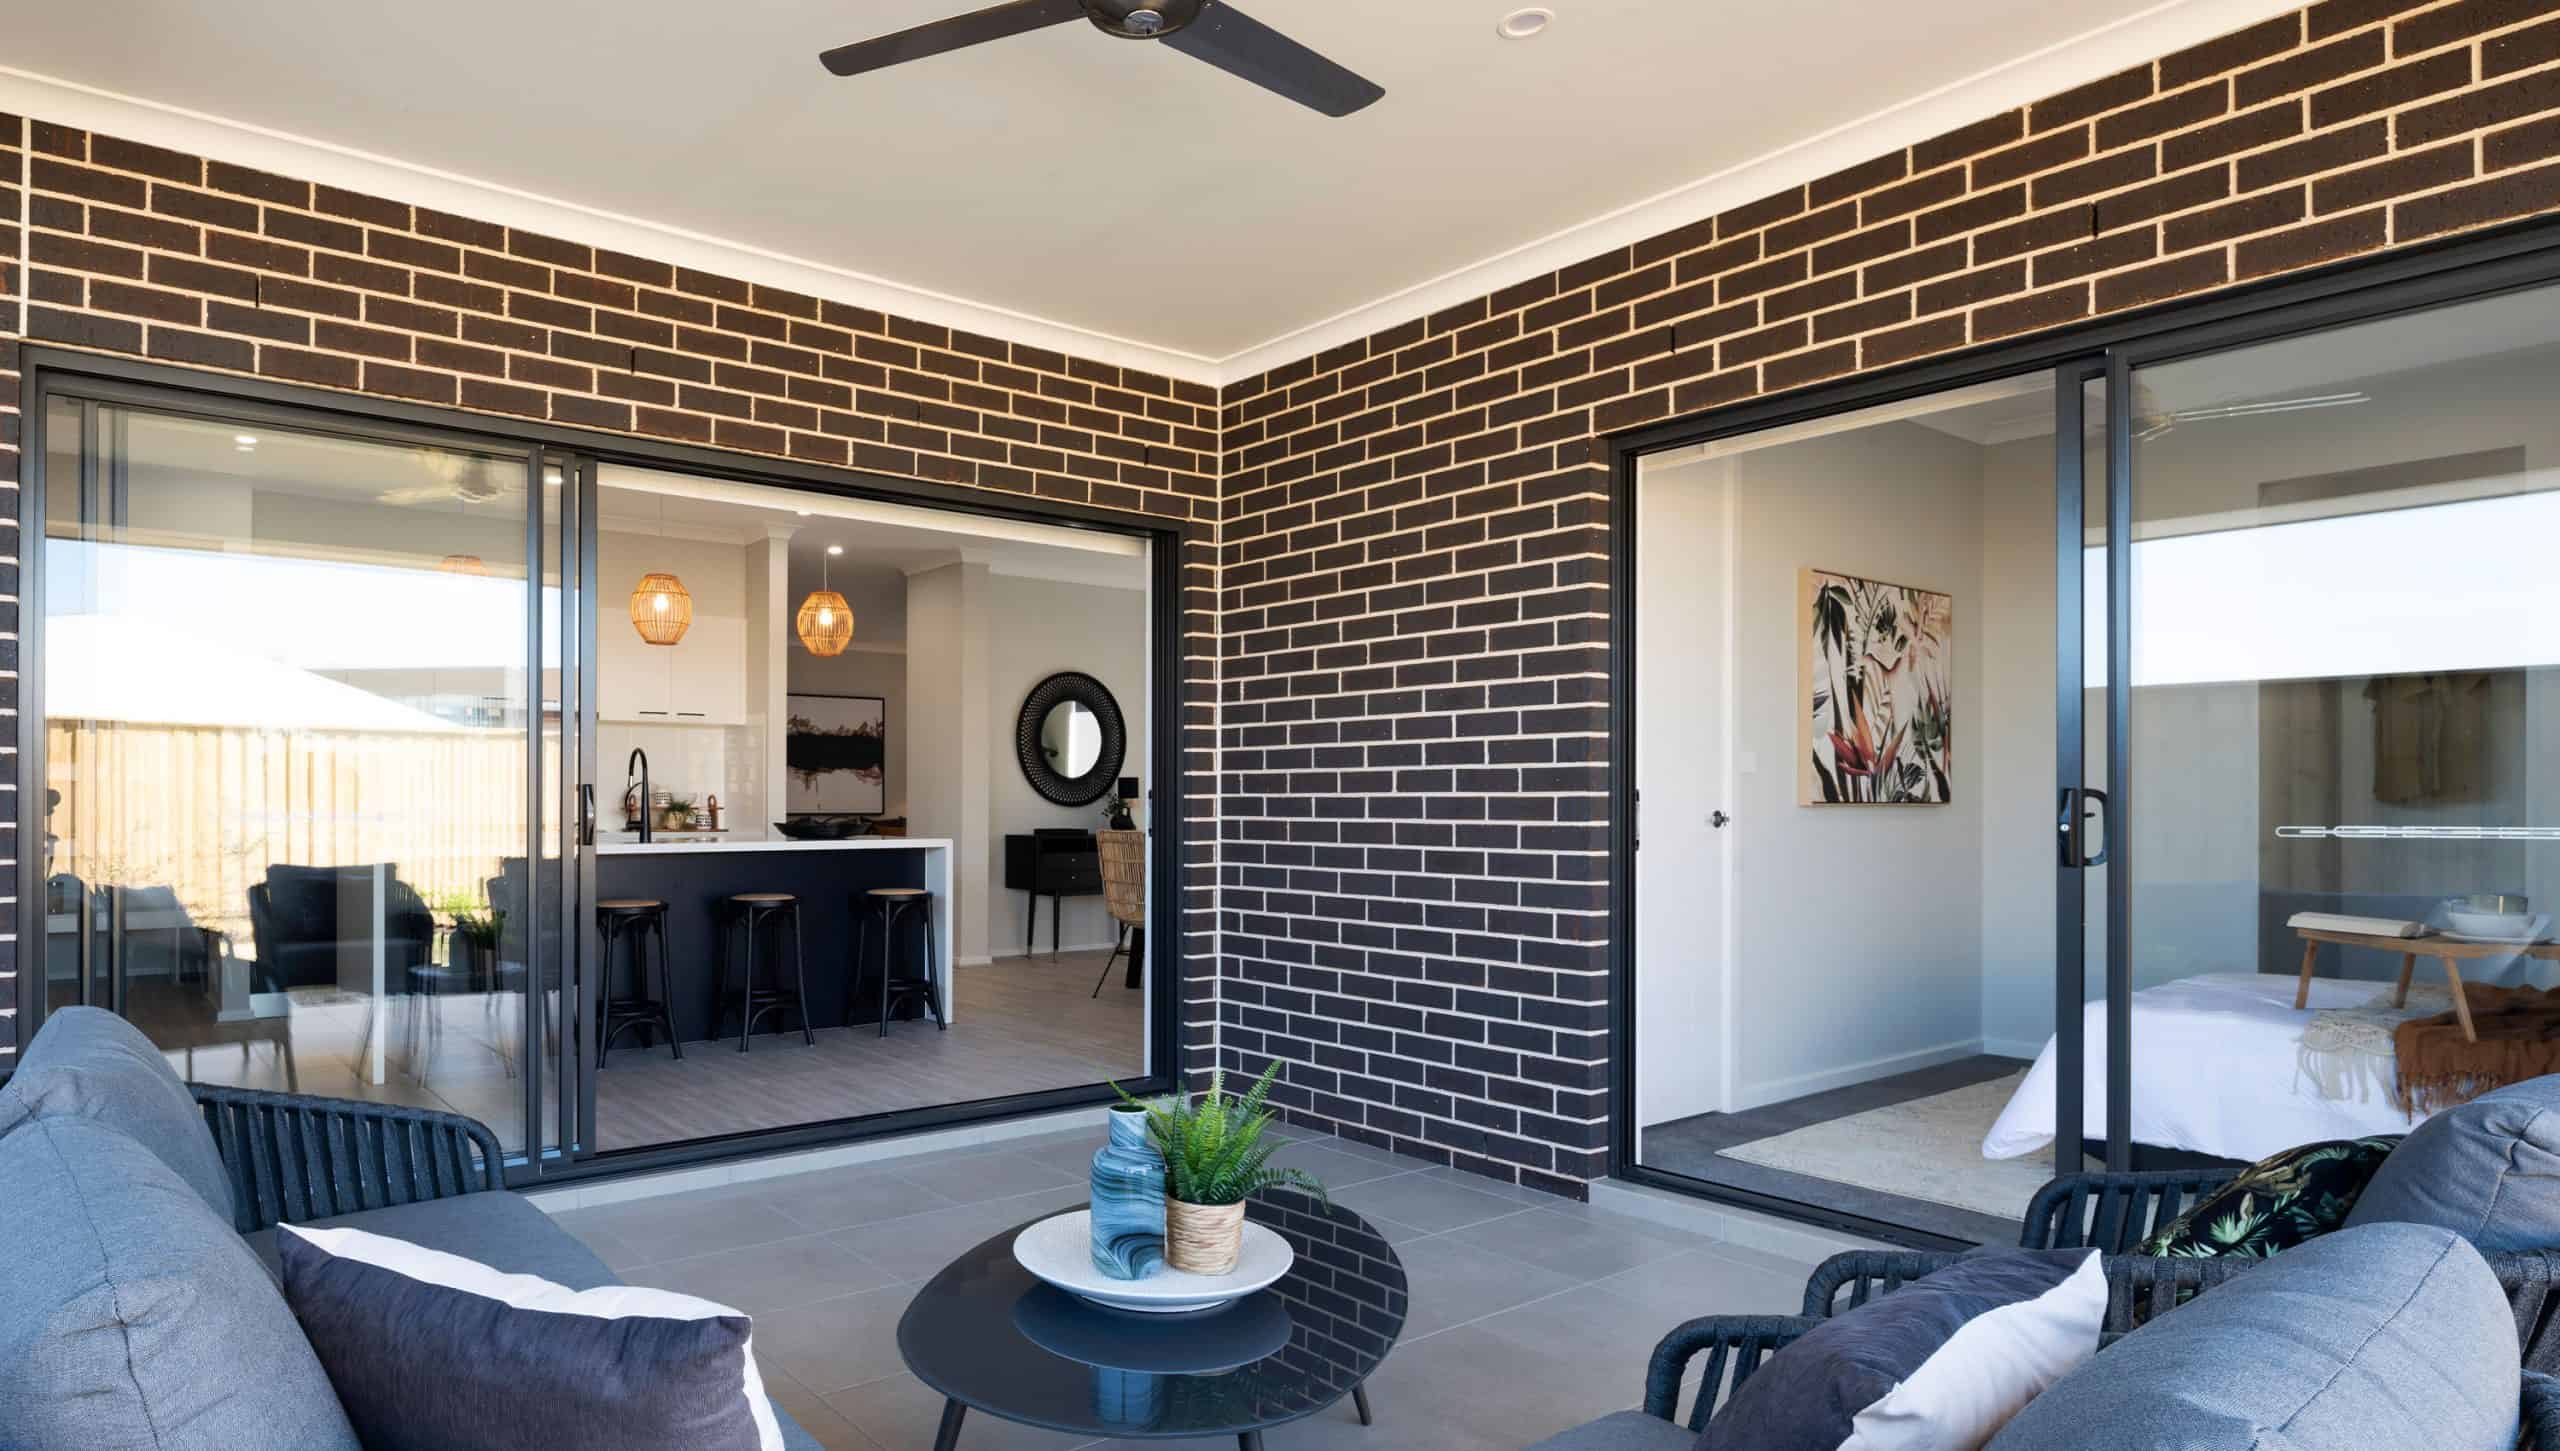 Empire tiled alfresco with ceiling fan indoor outdoor living Best Home Builders